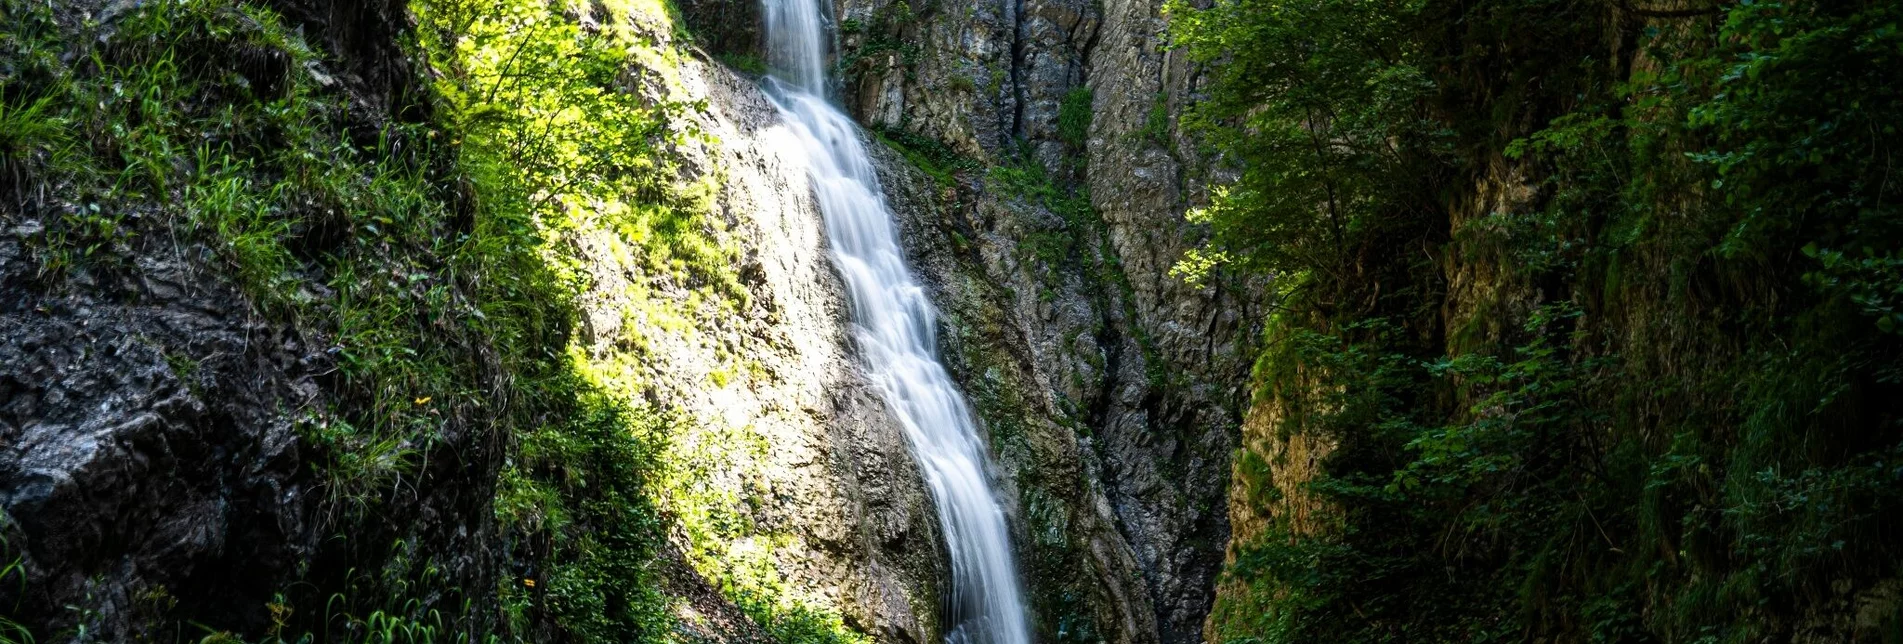 Wanderung Lesserner Wasserfall - Touren-Impression #1 | © Erlebnisregion Schladming-Dachstein